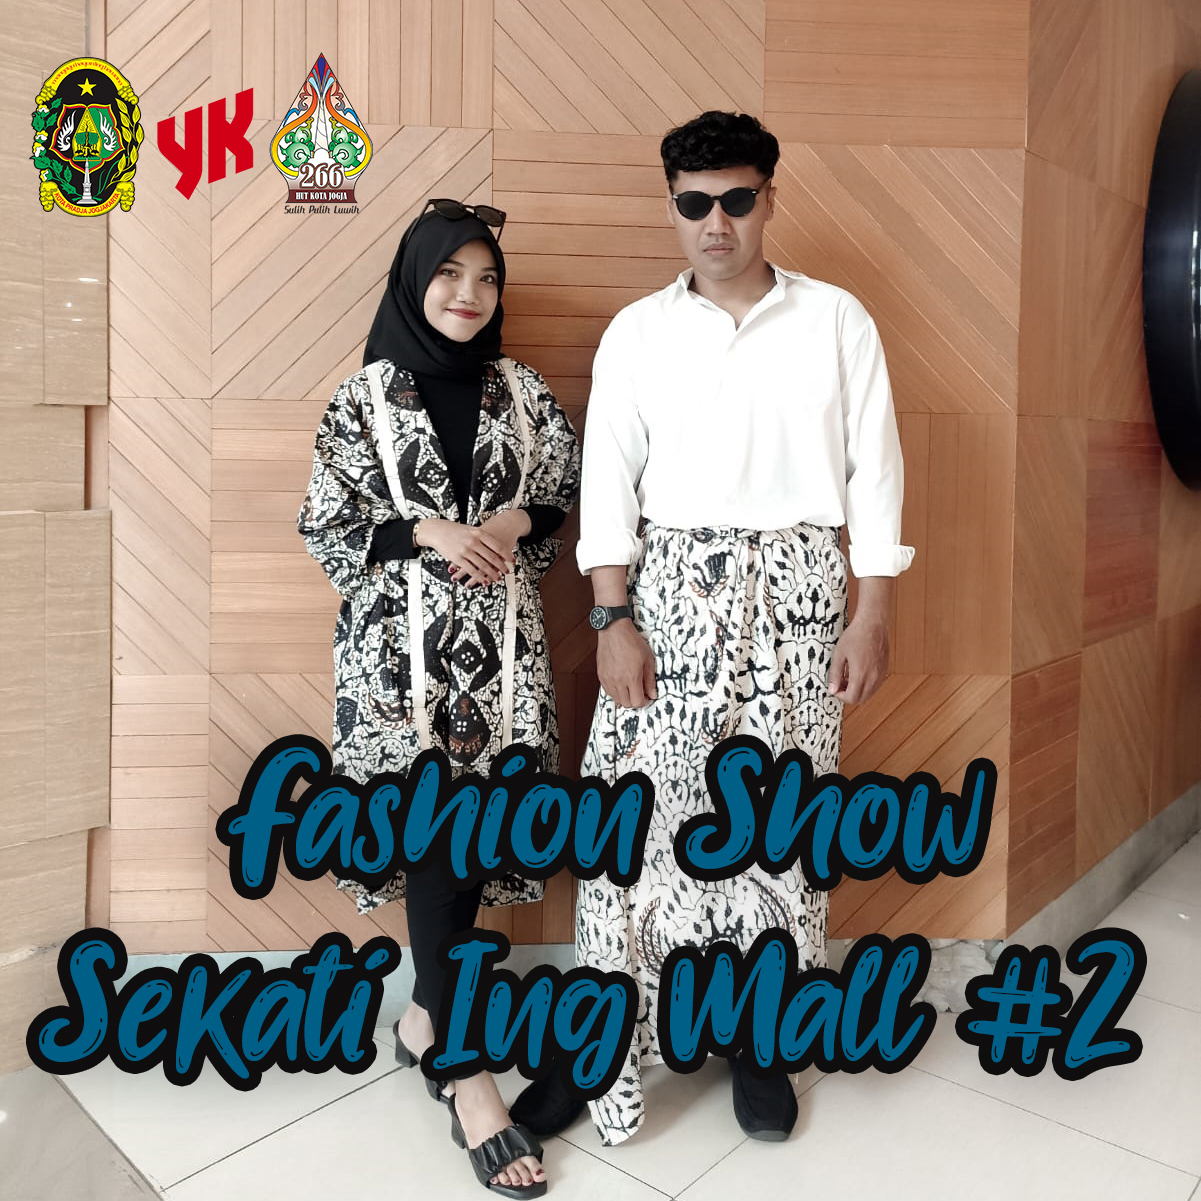 Fashion Show Sekati Ing Mall #2